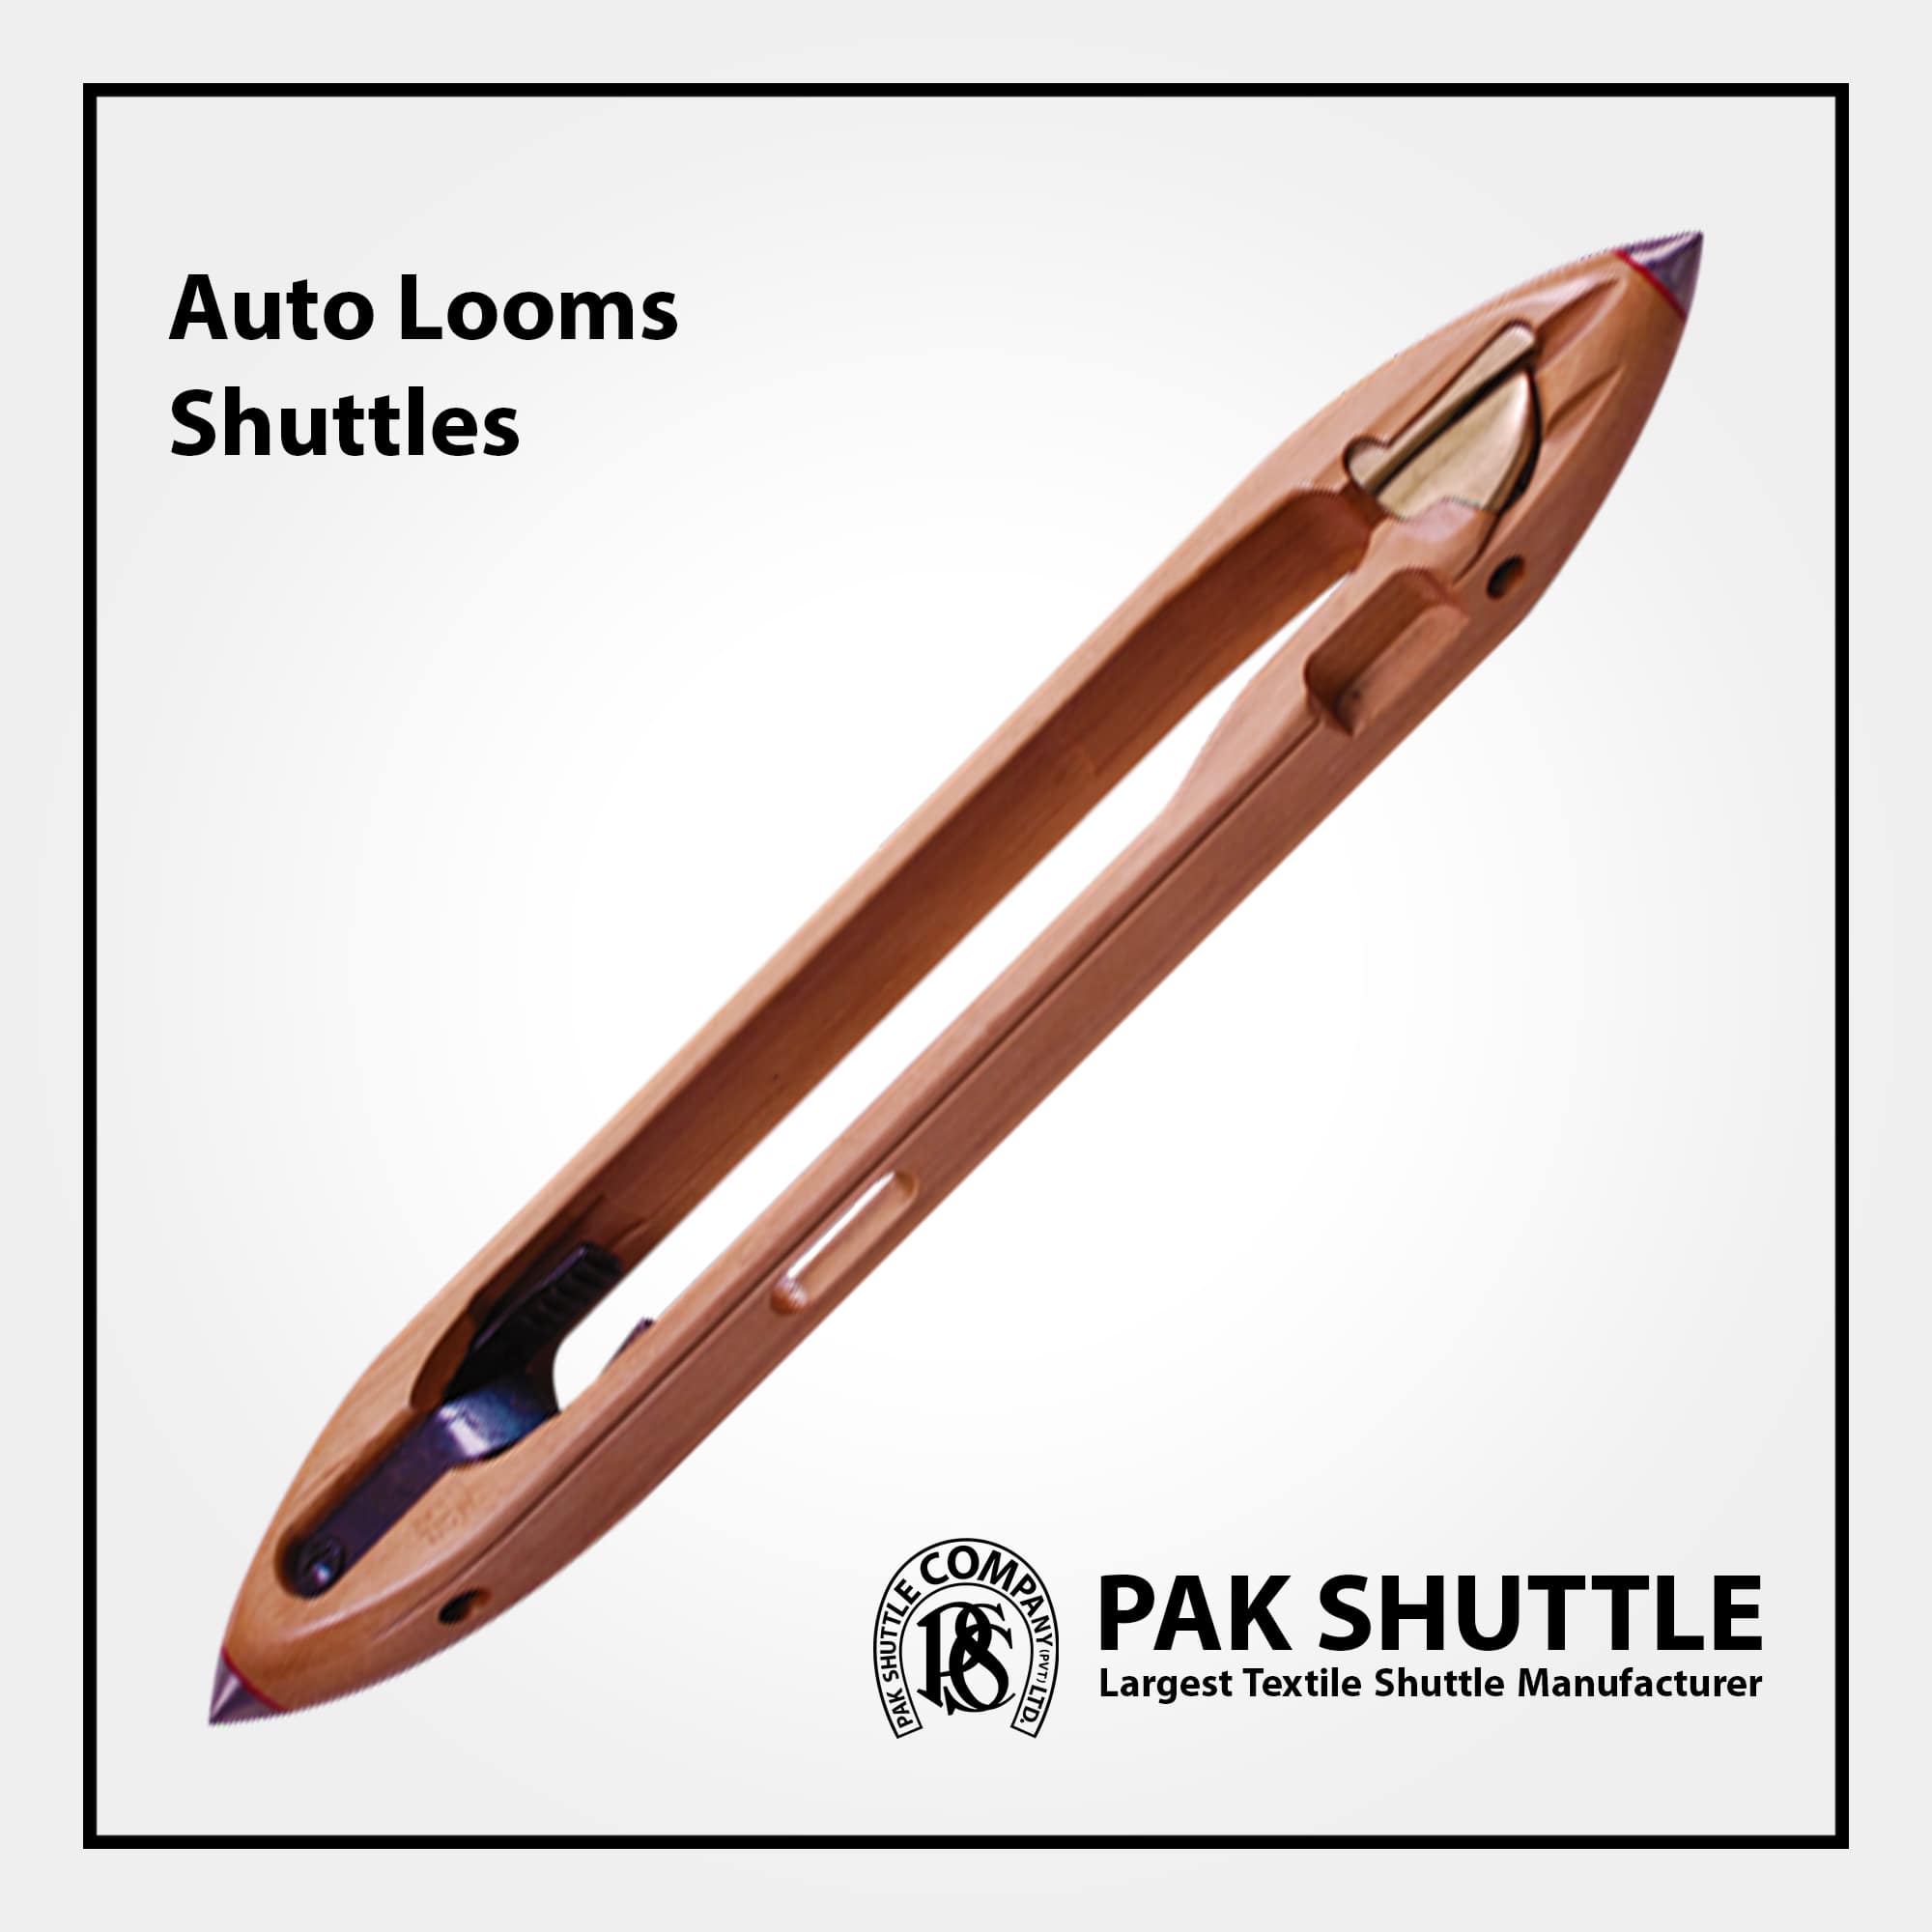 Auto Loom Shuttle by Pak Shuttle Company Pvt Ltd.